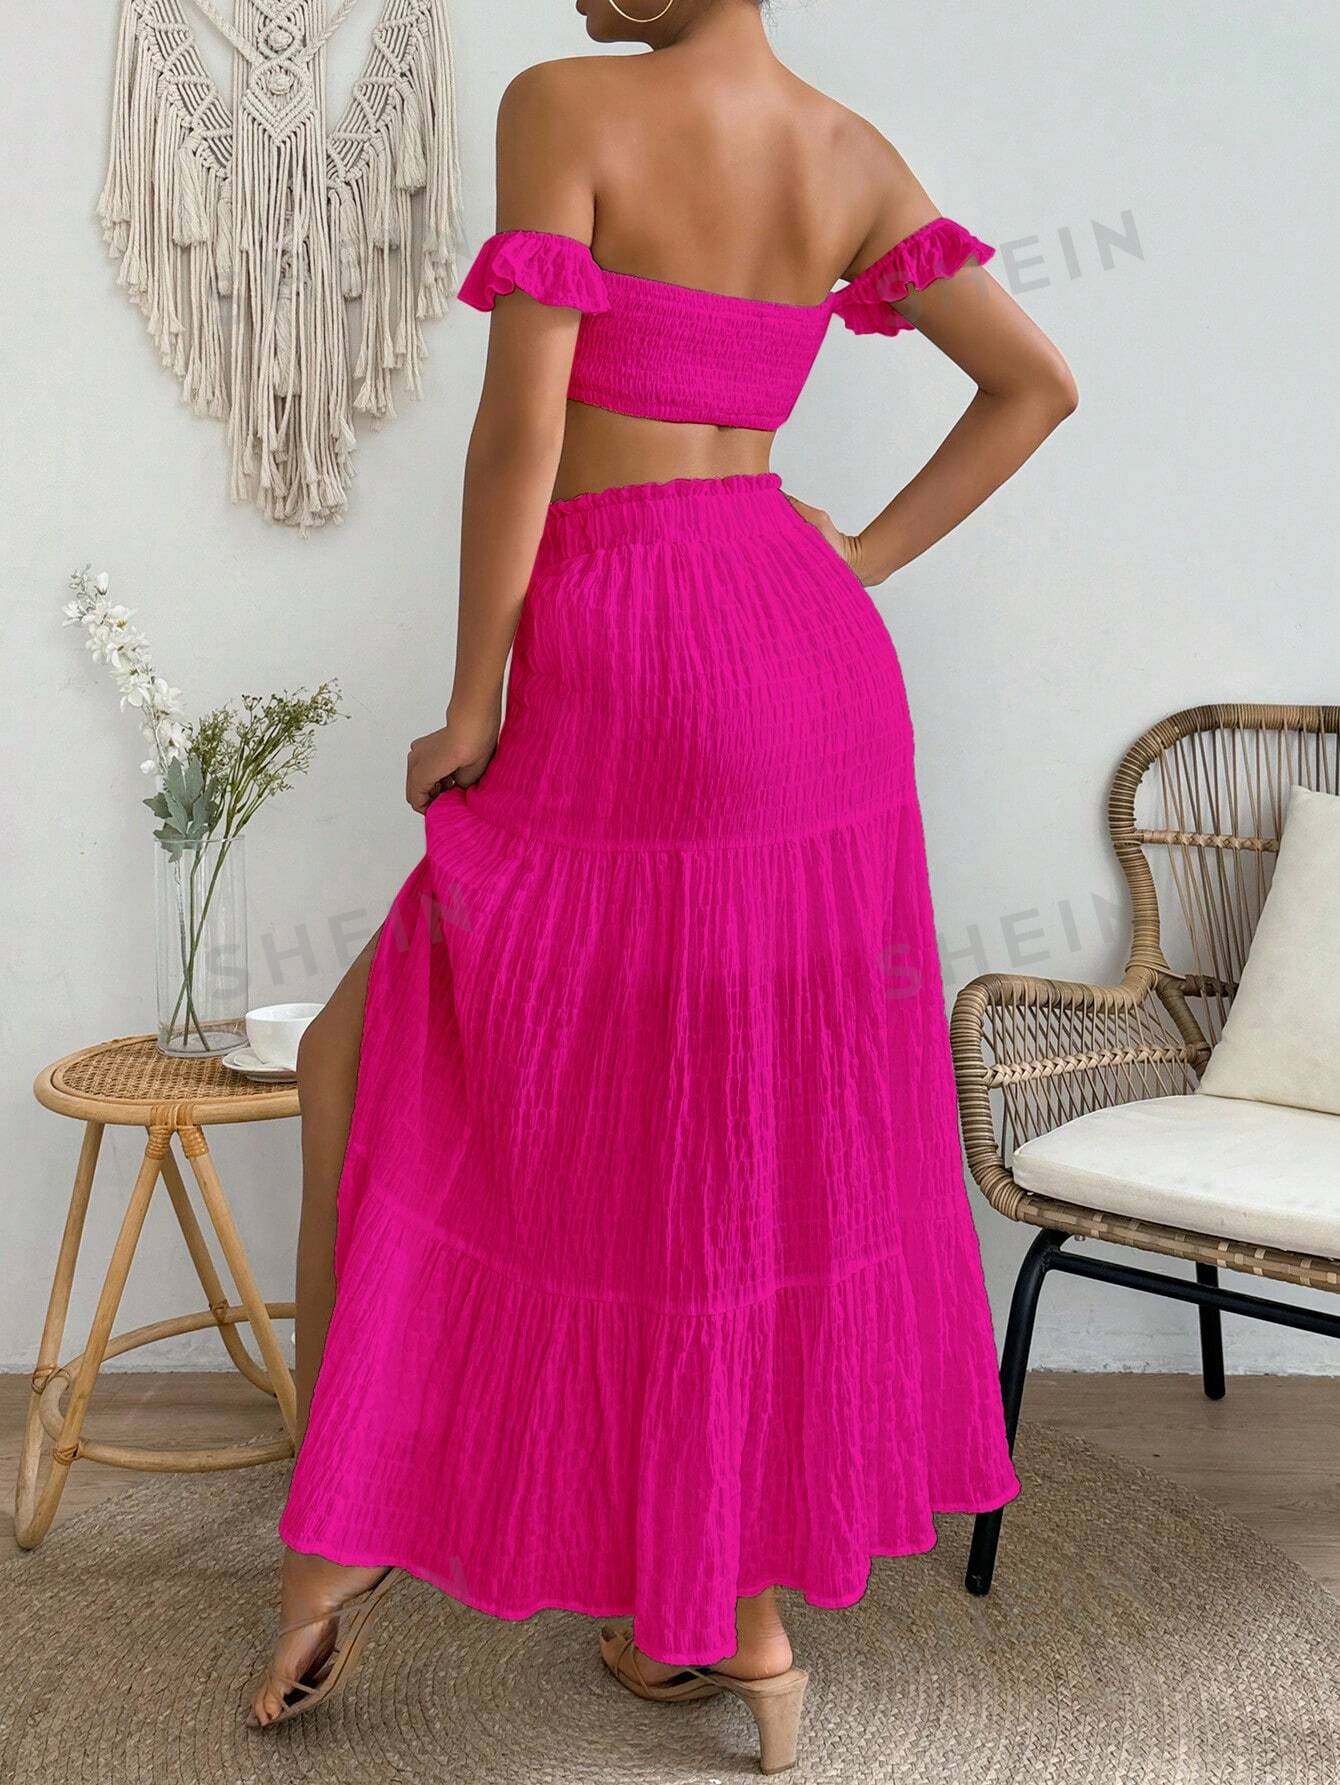 SHEIN VCAY Женский однотонный укороченный топ с открытыми плечами и юбка-миди с разрезом по подолу, ярко-розовый shein vcay женская юбка миди с цветочным принтом многоцветный